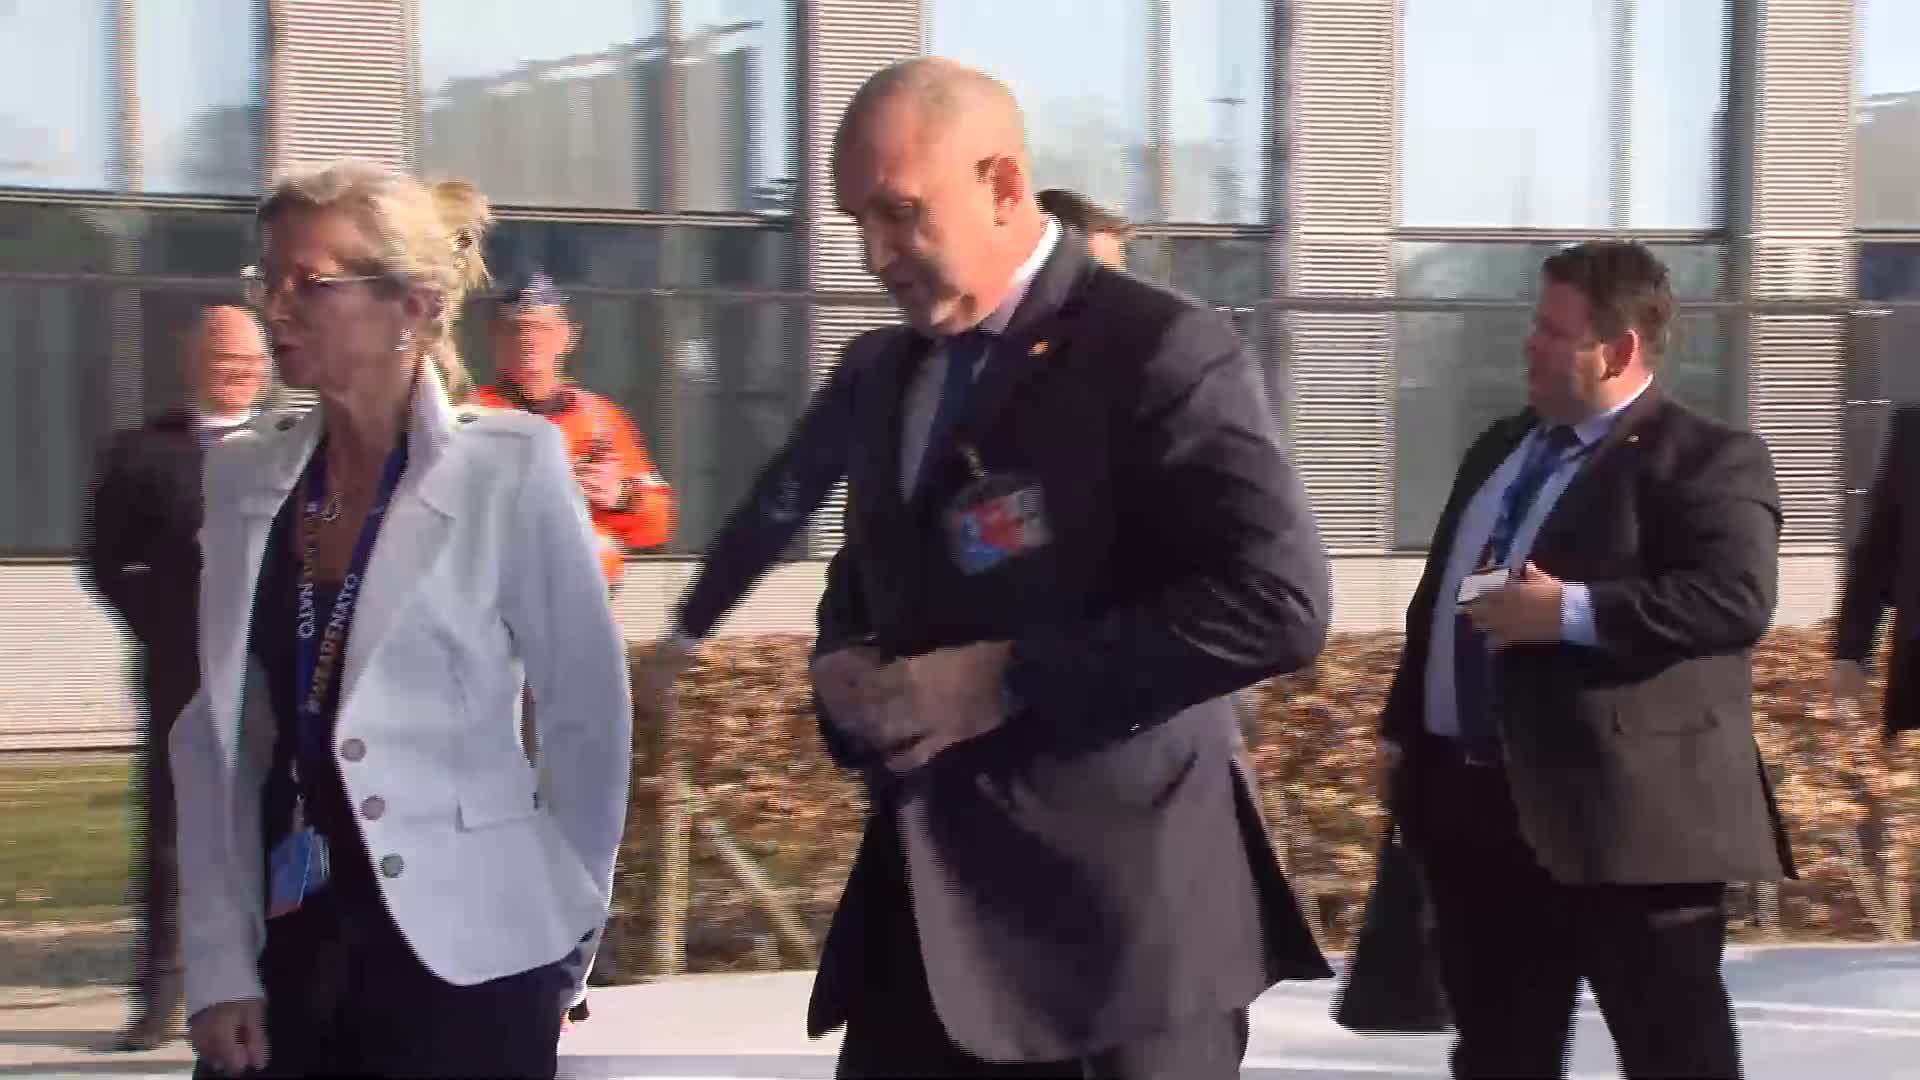 Румен Радев пристигна на извънредната Среща на върха на НАТО в Брюксел